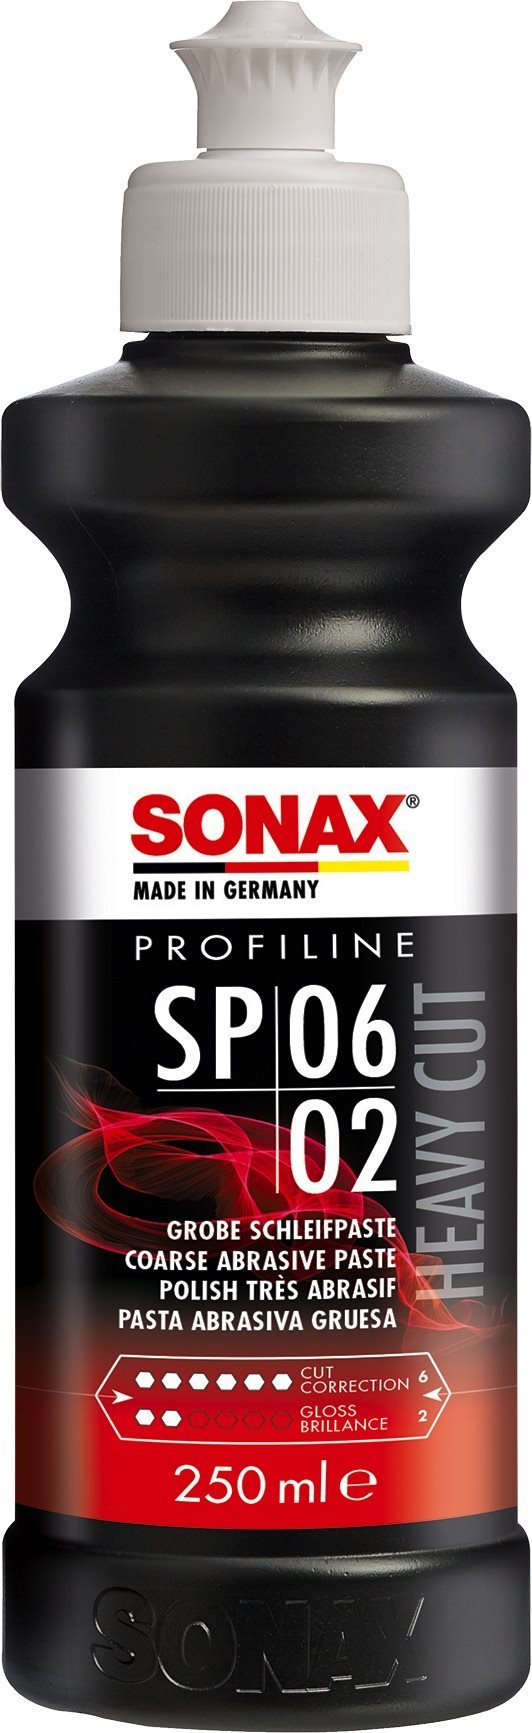 SONAX csiszoló paszta szilikon-mentes, 250 ml